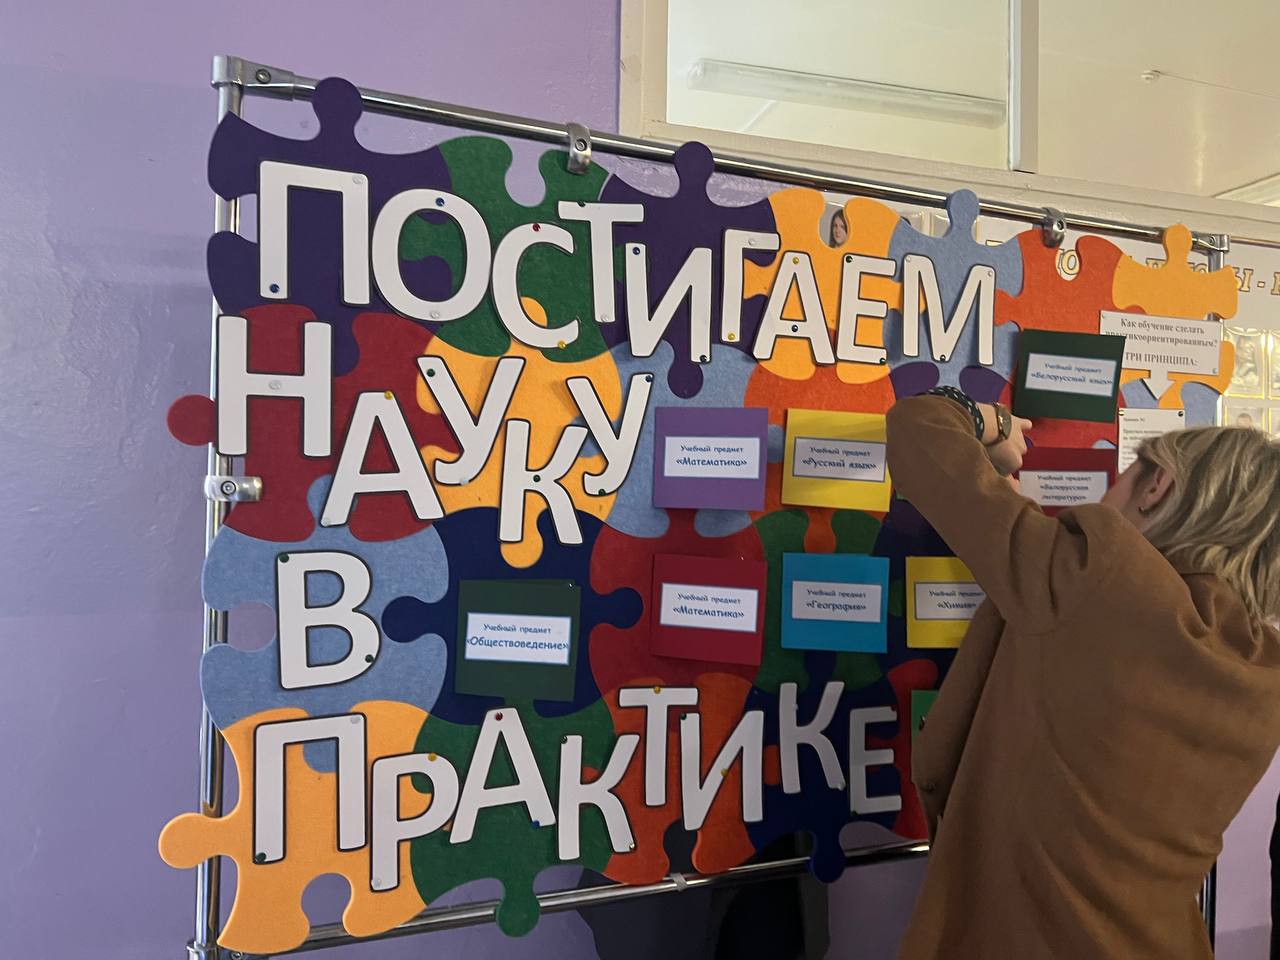 Кабаковская СШ - участник районного фестиваля педагогических идей